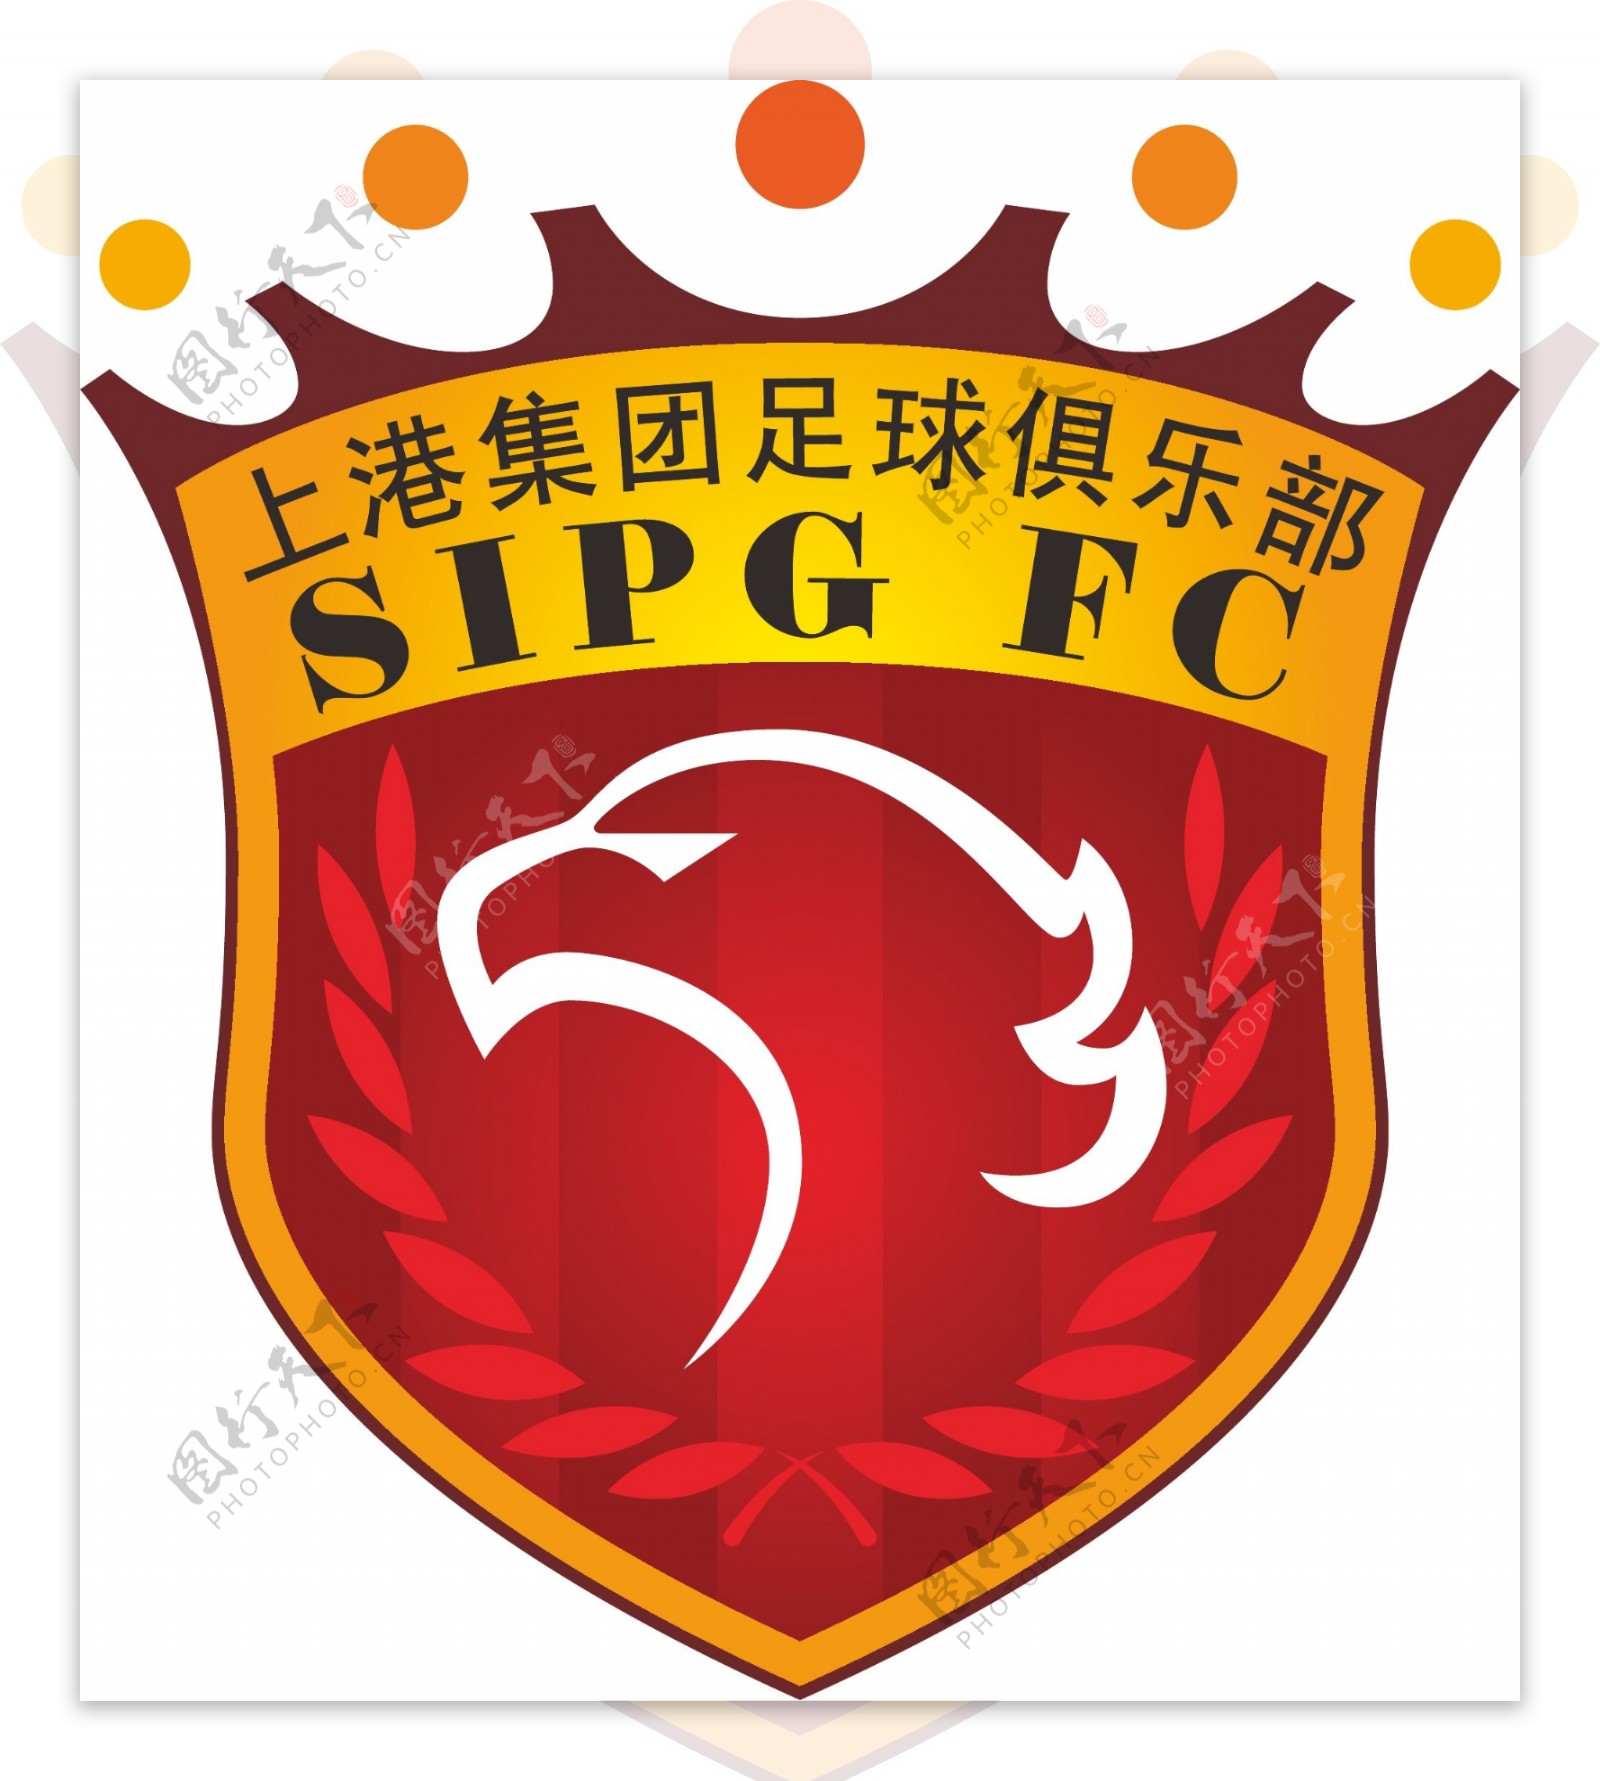 上海上港集团足球俱乐图片